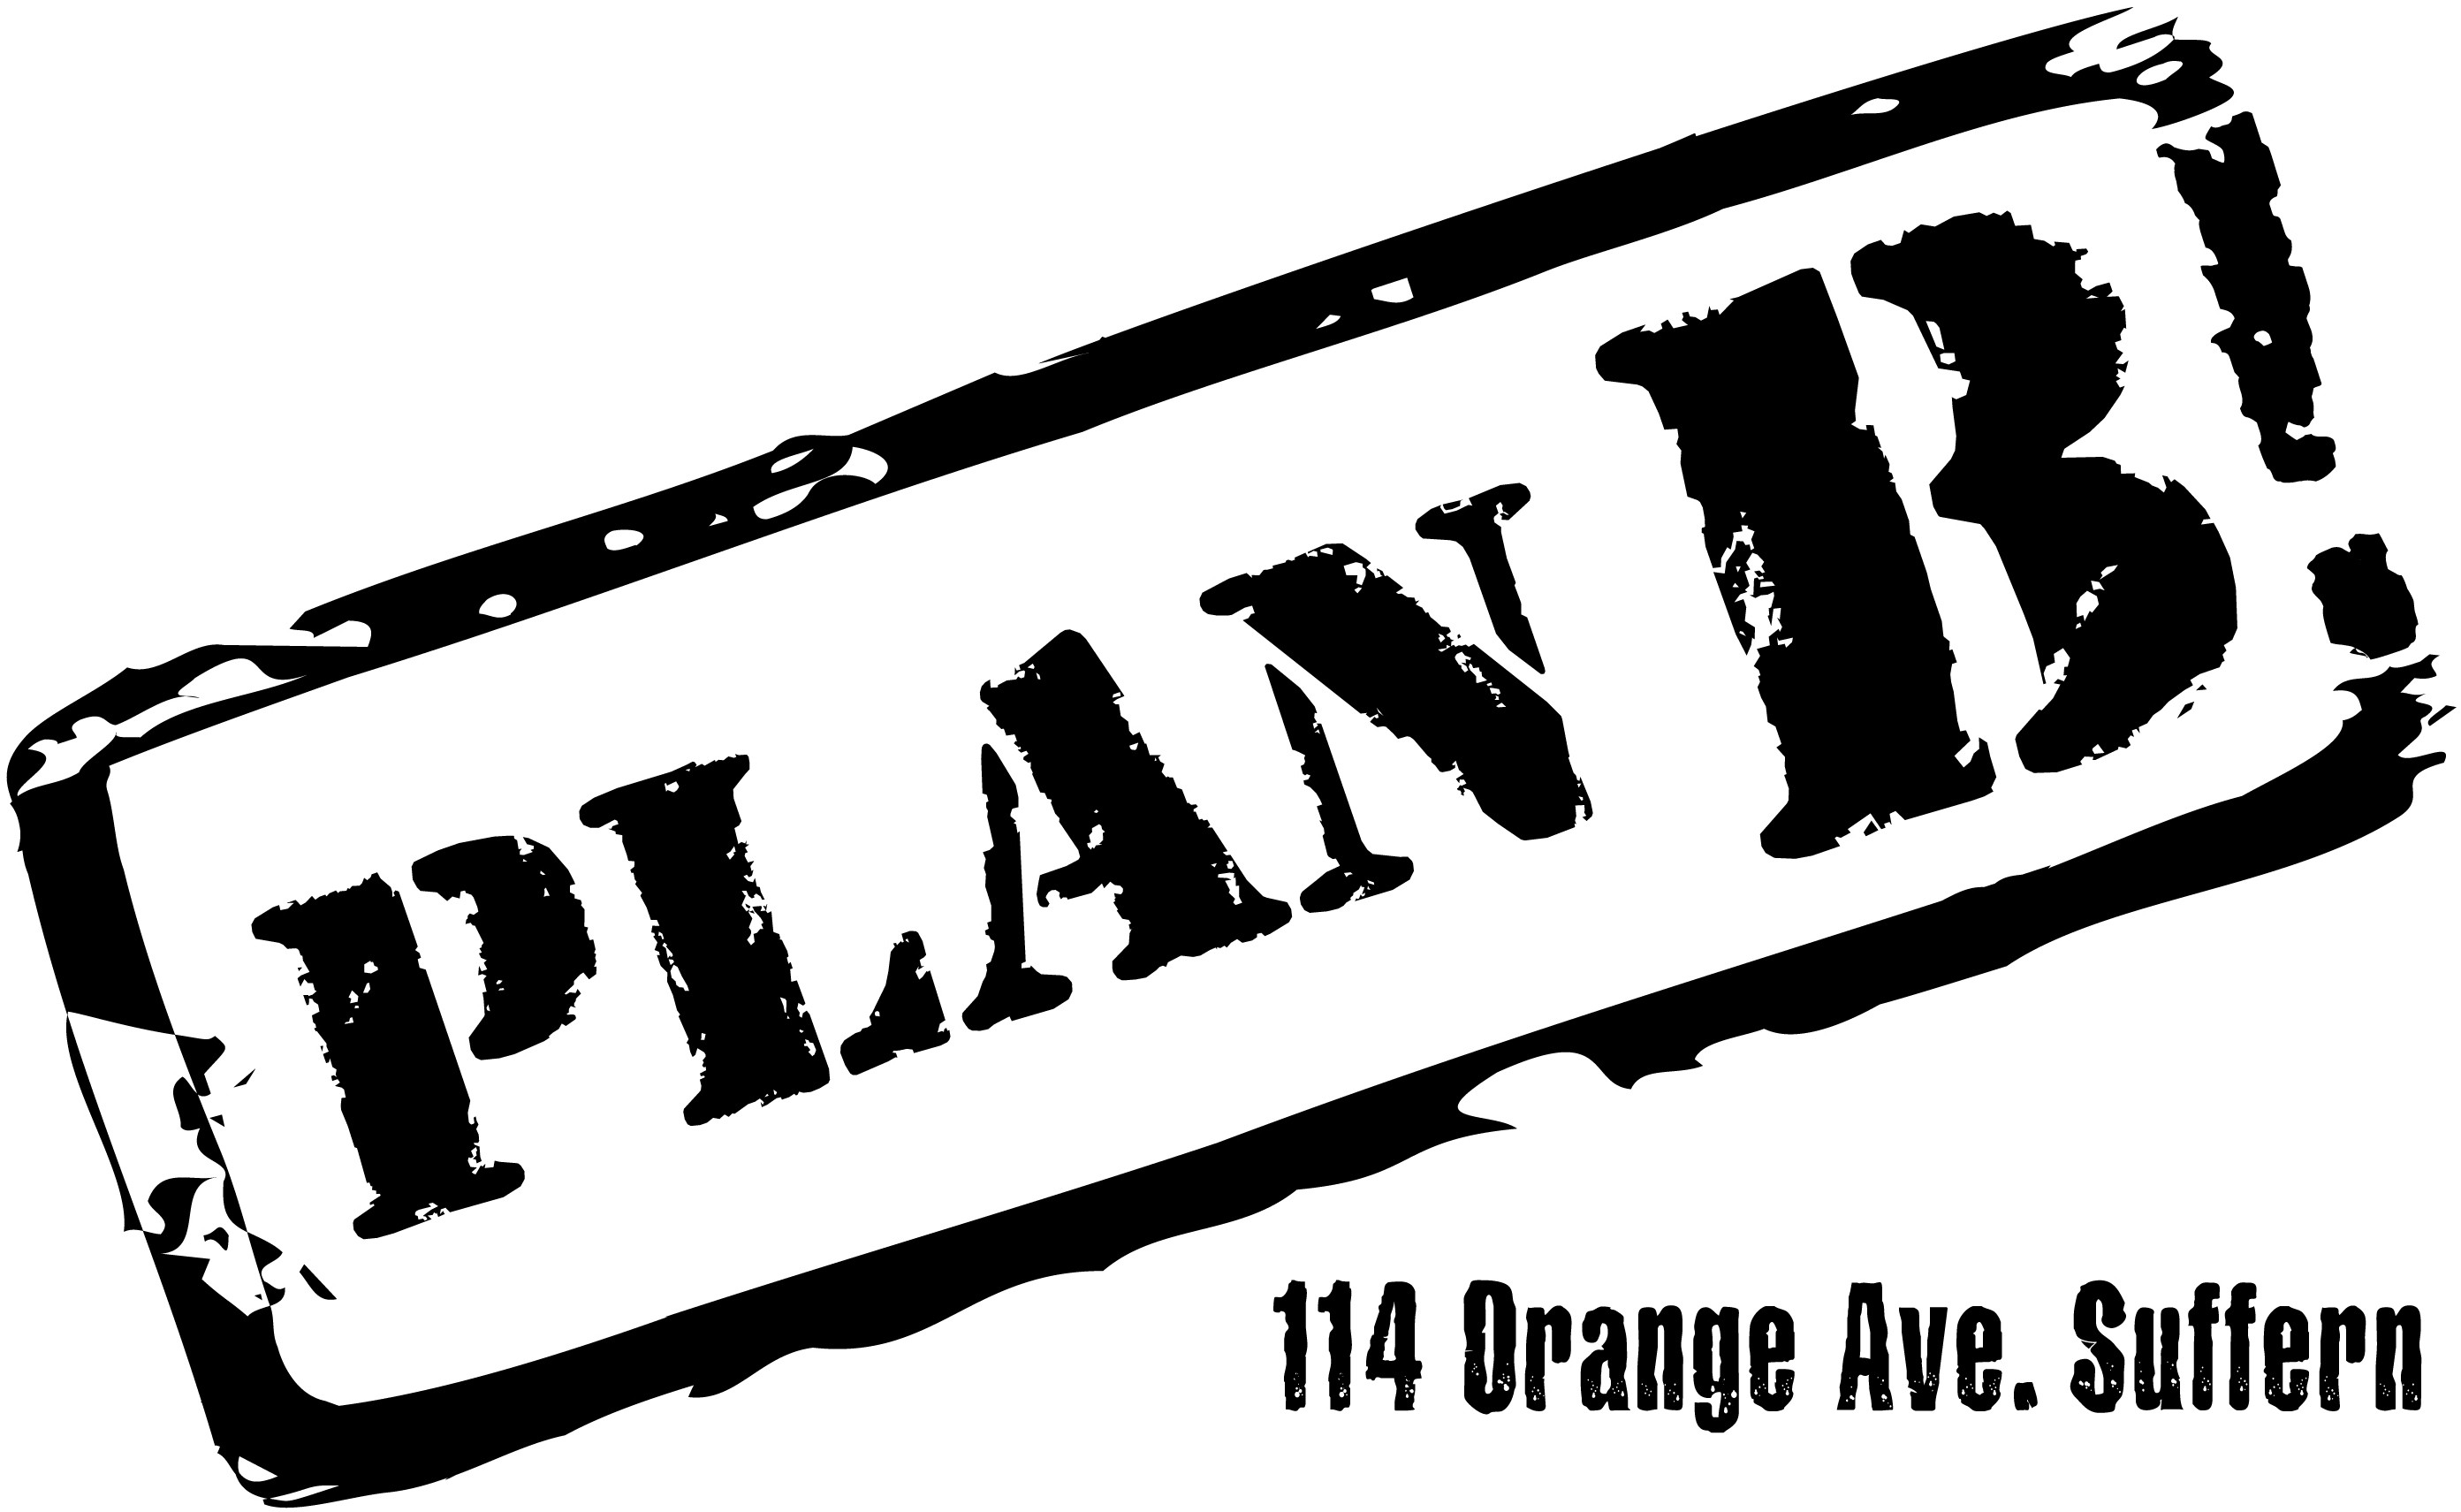 Plan B 114 Orange Ave